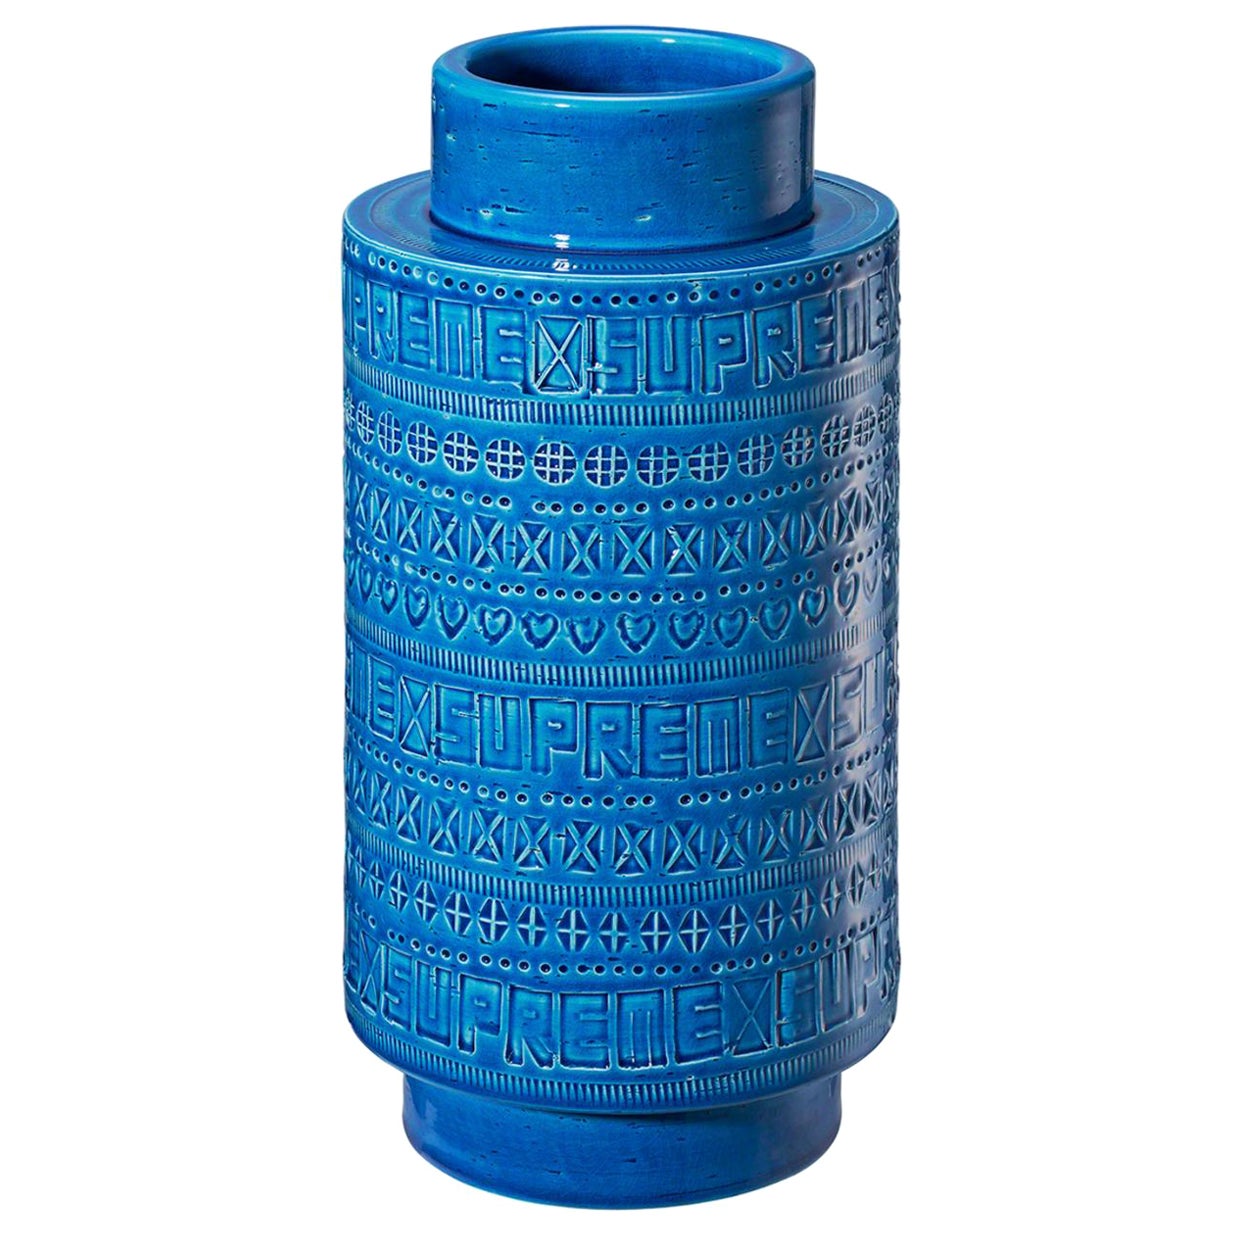 Vase Rimini Blu Supreme x Bitossi printemps 2023, édition limitée, Italie